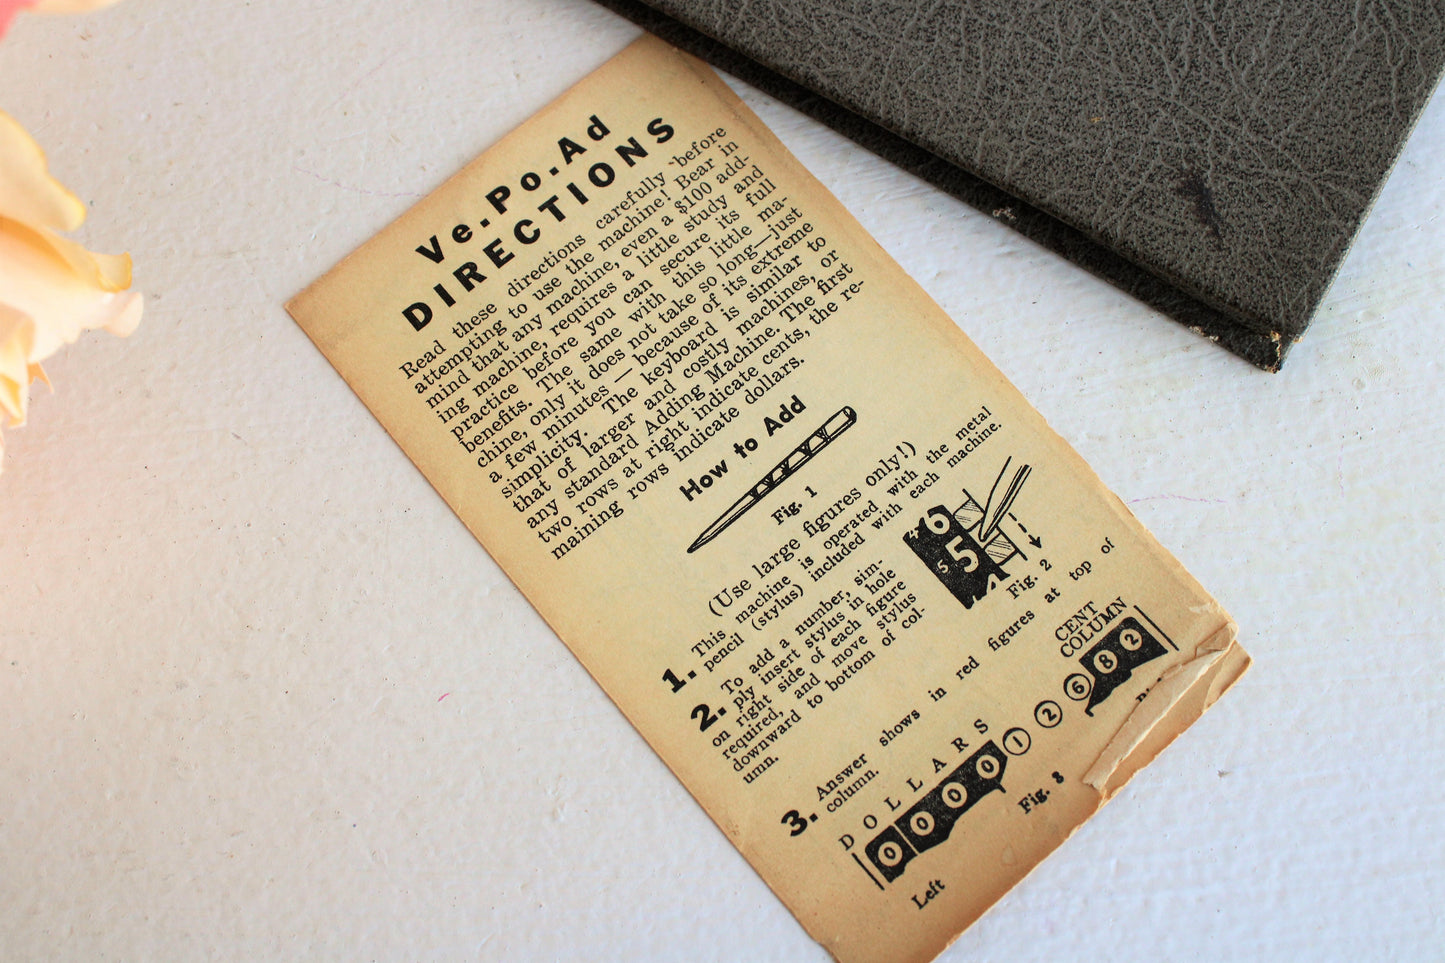 Vintage 1940s Ve Po Ad Pocket Calculator